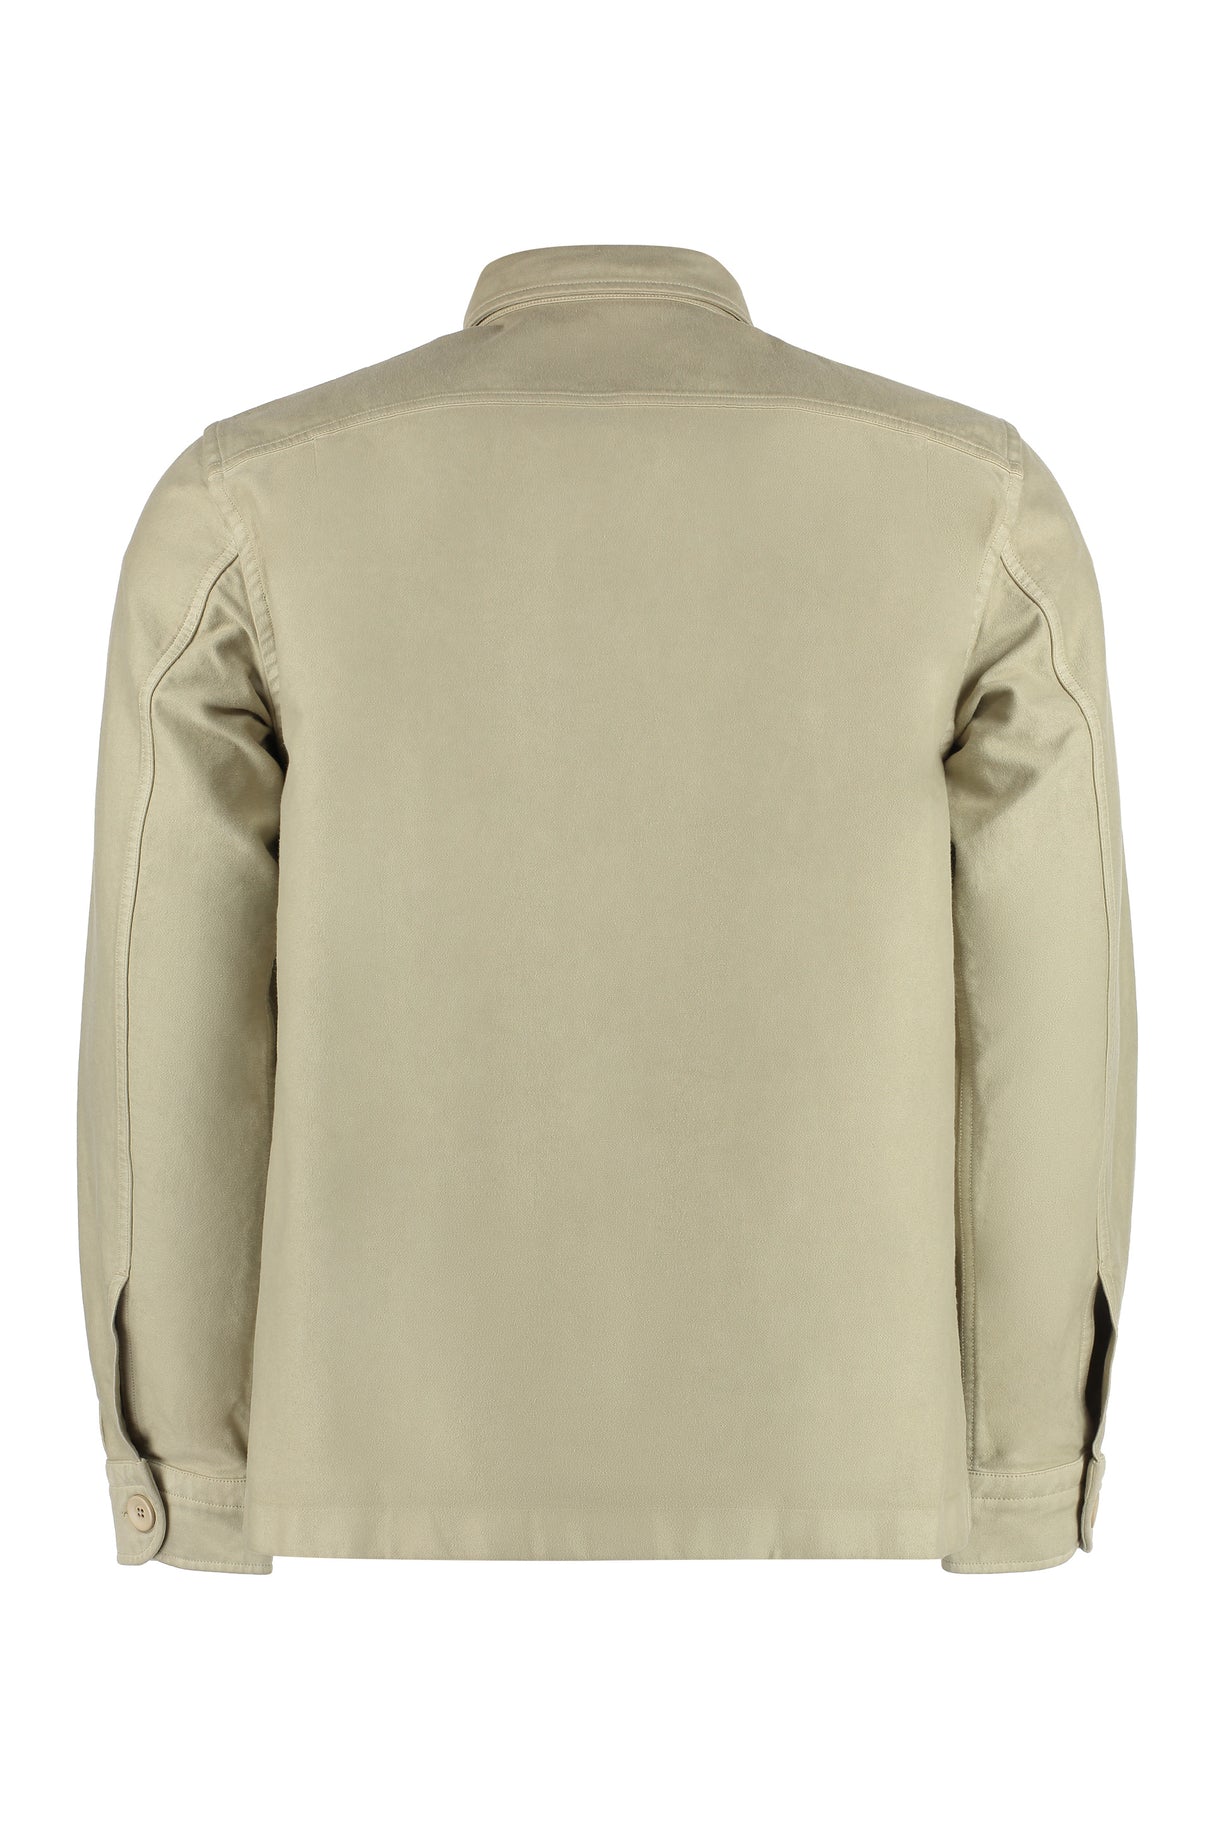 Áo khoác cotton màu be cho nam giới - Bộ sưu tập SS23